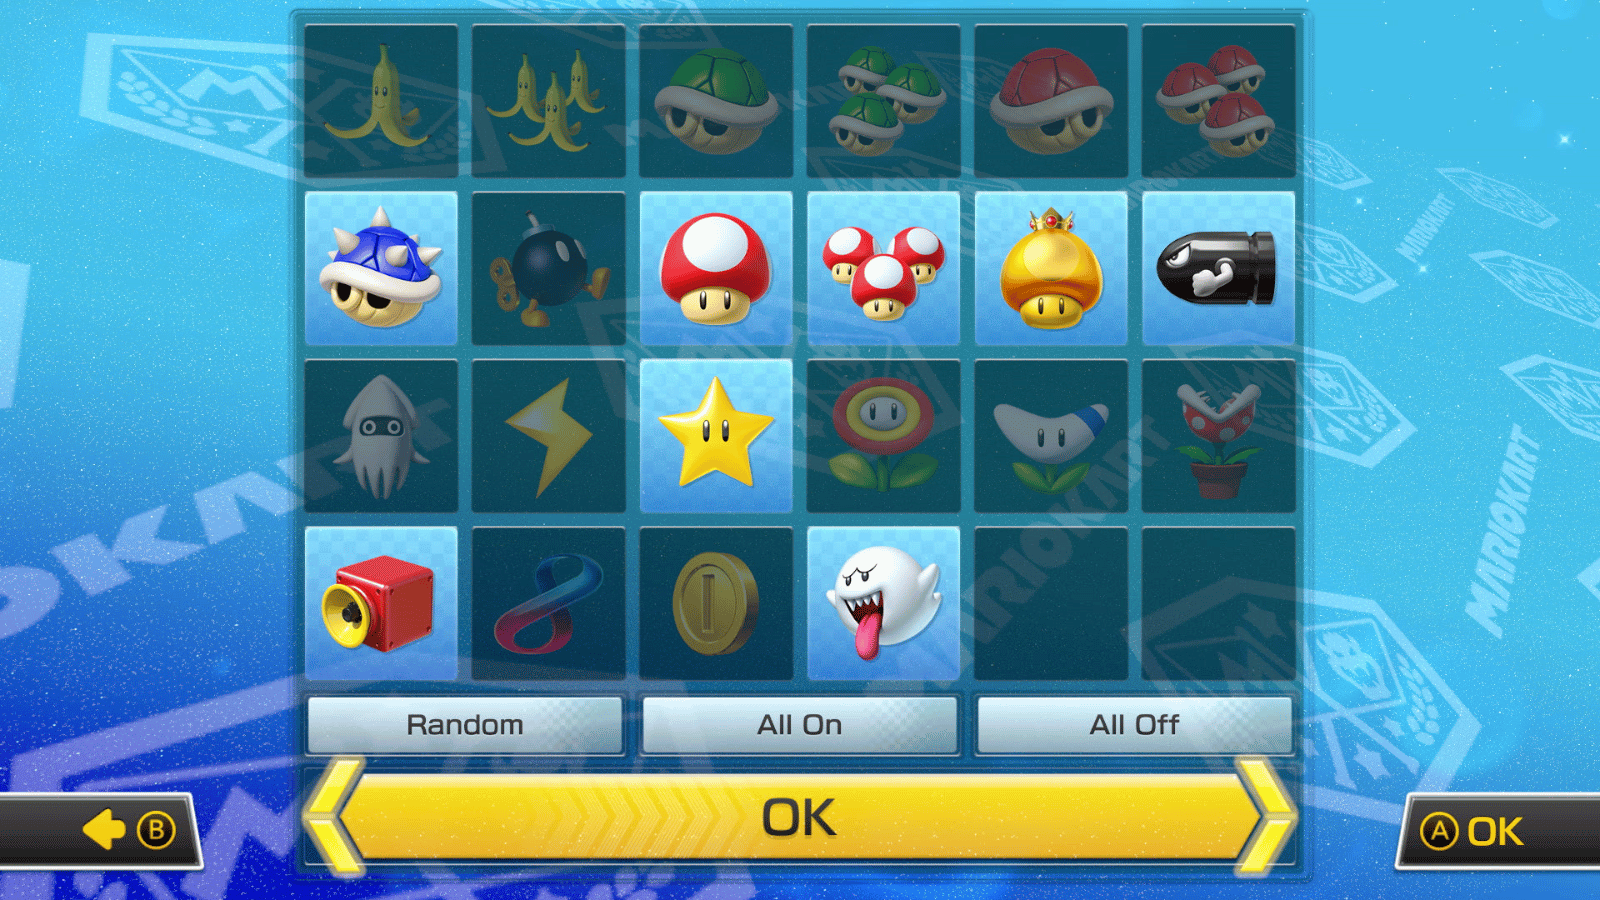 Mario kart 8 Deluxe update